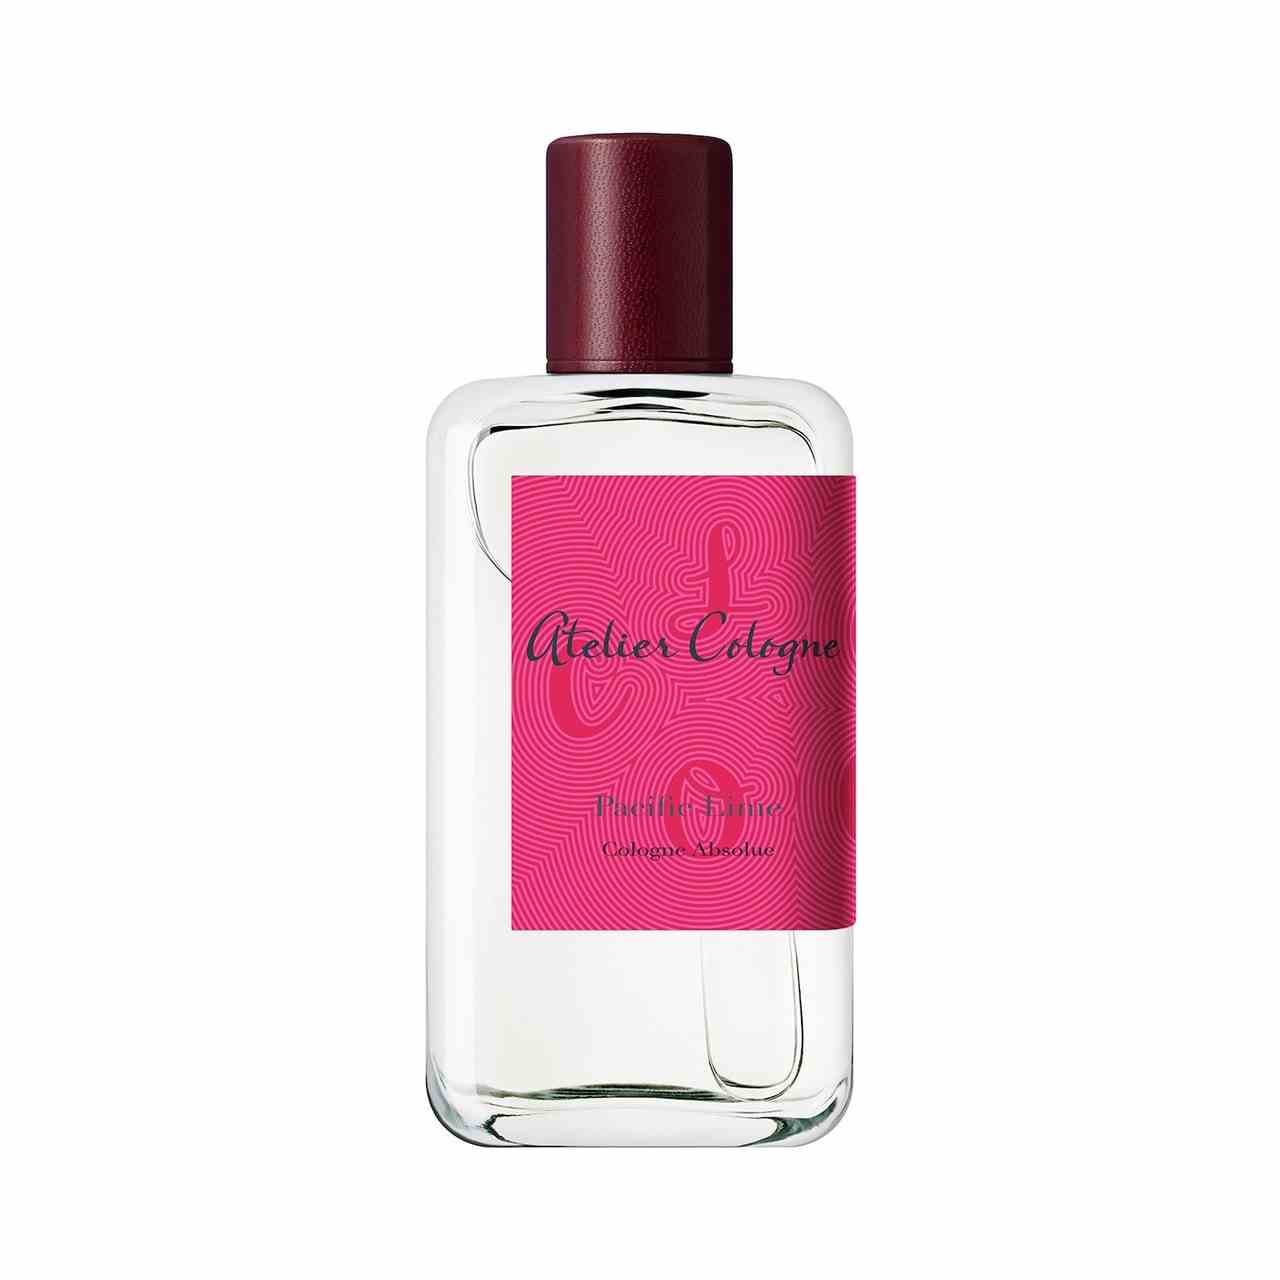 Atelier Cologne Pacific Lime Pure Perfume rechteckige Parfümflasche mit rosa Etikett und burgunderfarbener Kappe auf weißem Hintergrund